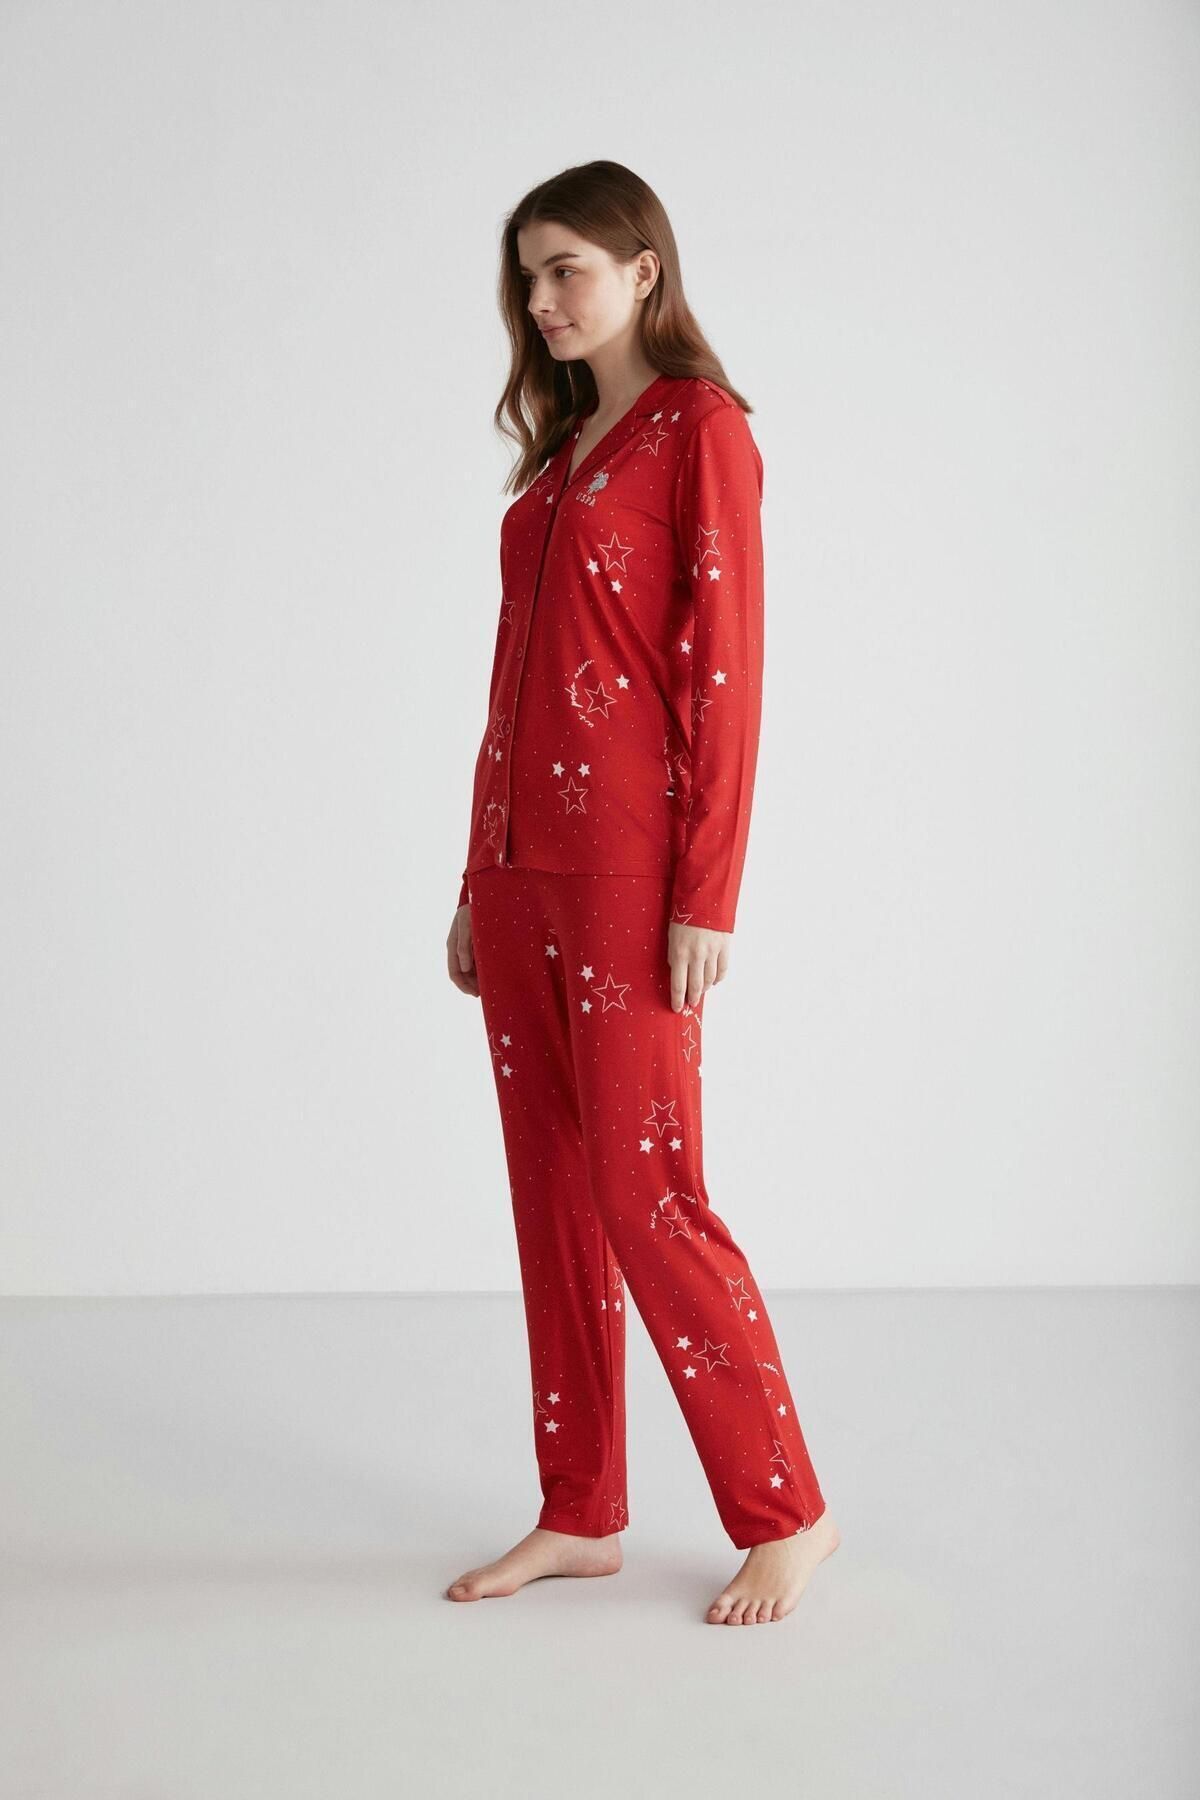 U.S. Polo Assn. Kadın %100 Pamuklu Kırmızı Yıldız Desenli Boydan Patlı Düz Paça 2'li Pijama Takımı